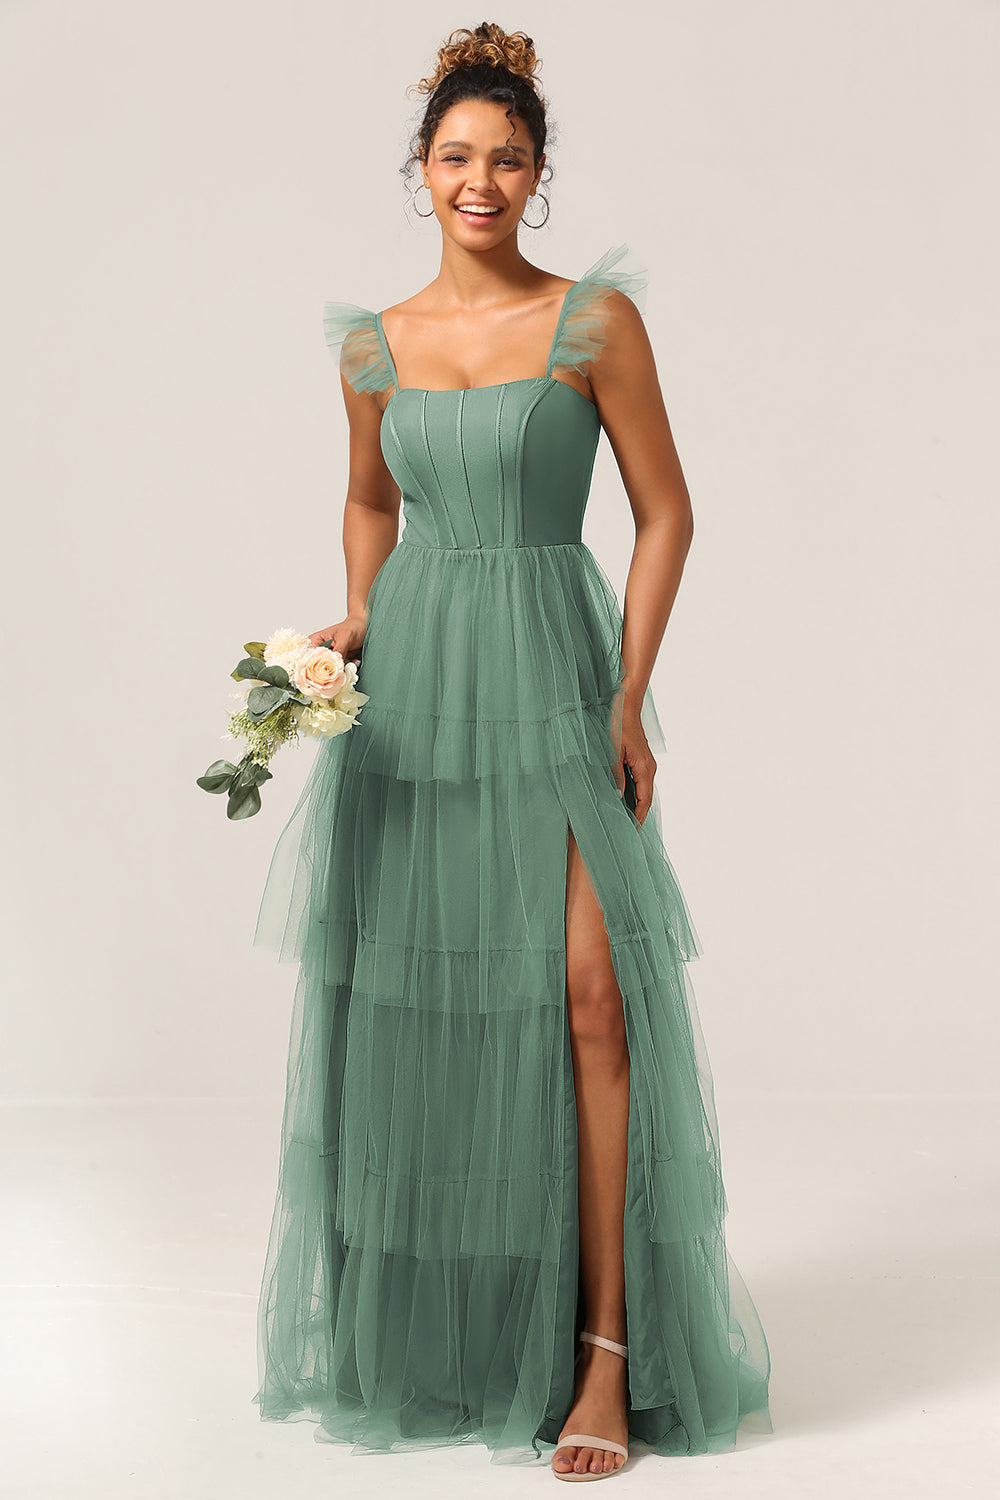 Eucalyptus A Line Spaghetti Straps Floor Length Tulle Bridesmaid Dress